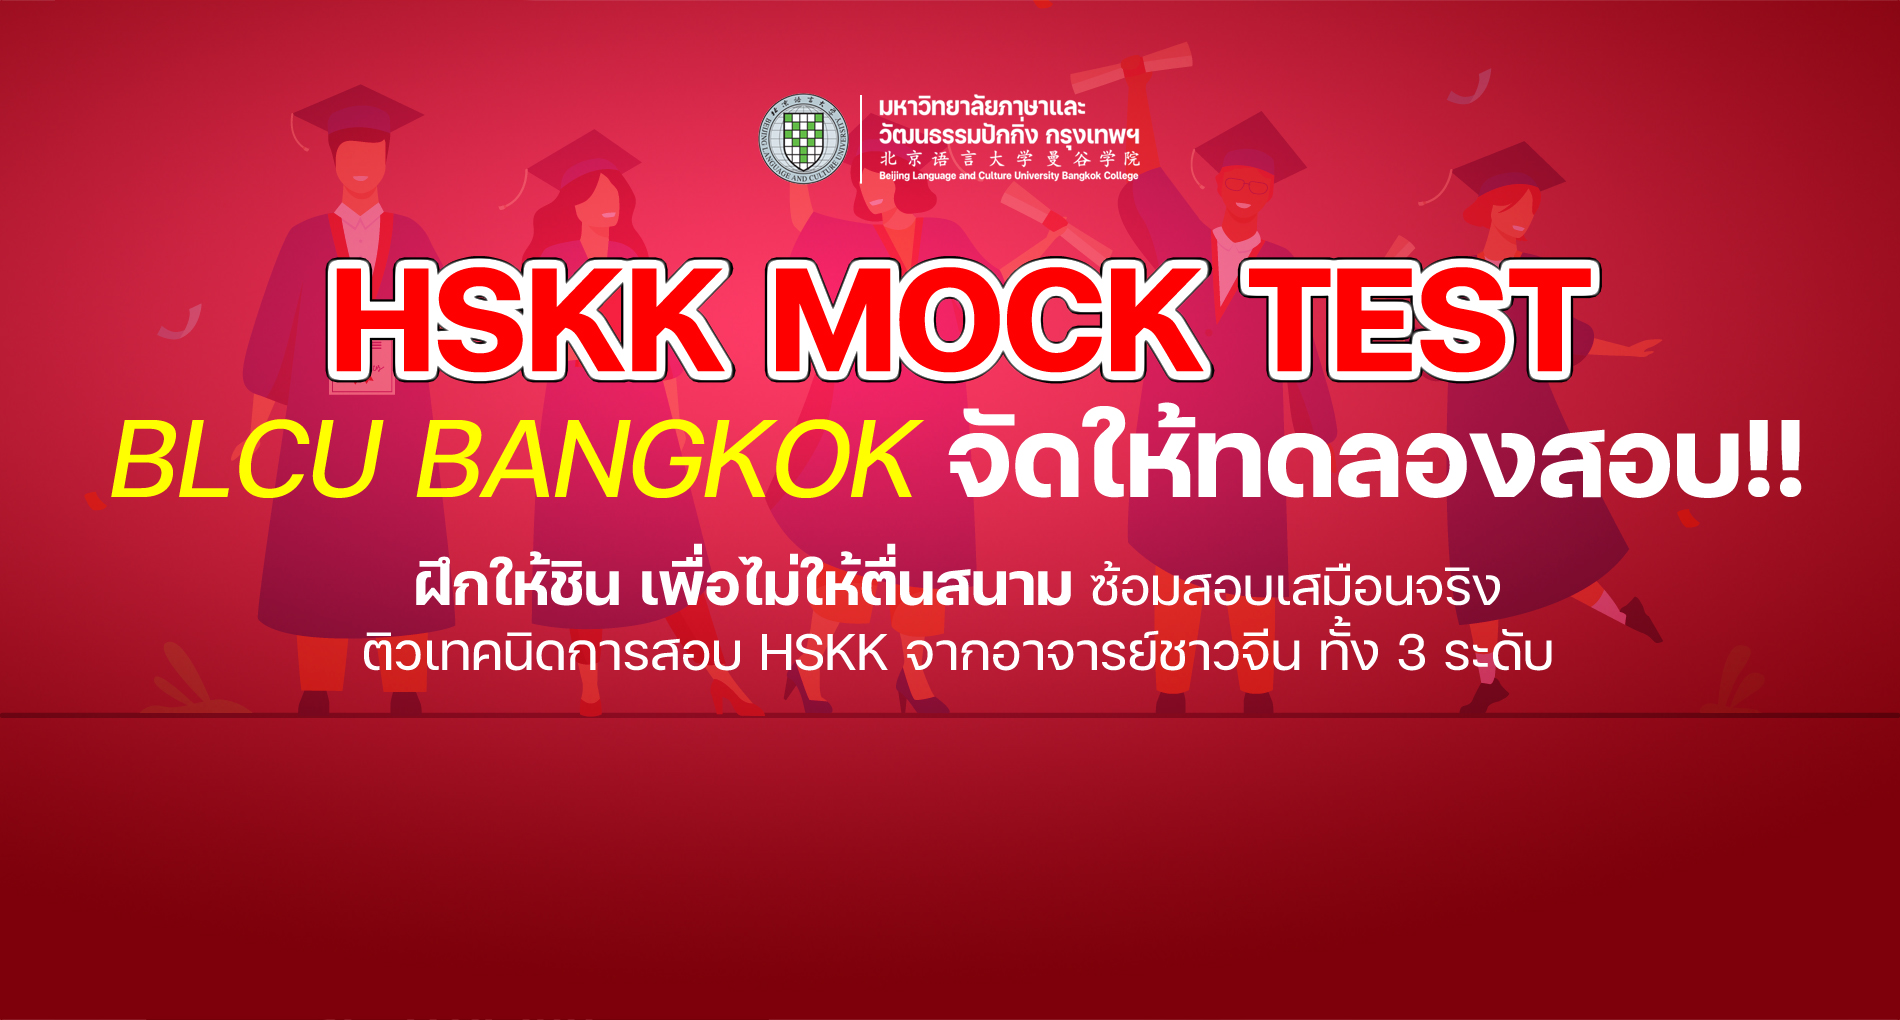 HSKK MOCK TEST BLCU BANGKOK จัดให้ทดลองสอบ